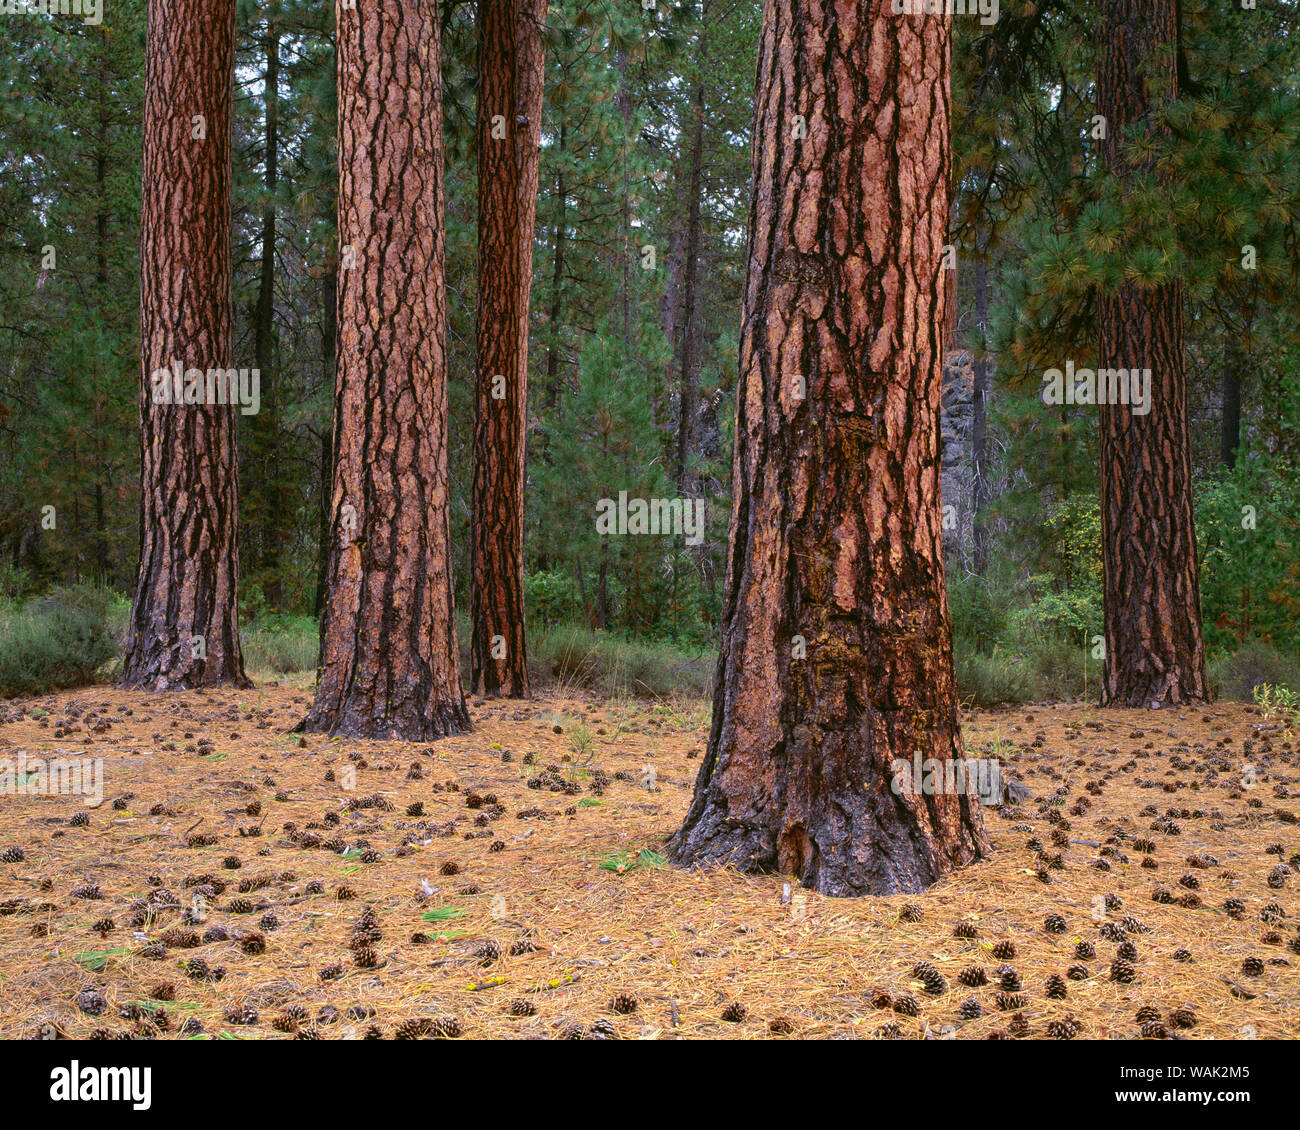 Stati Uniti d'America, Oregon, Newberry nazionale monumento di origine vulcanica. Coni, gli aghi e le linee colorate della ponderosa pine trees. Foto Stock